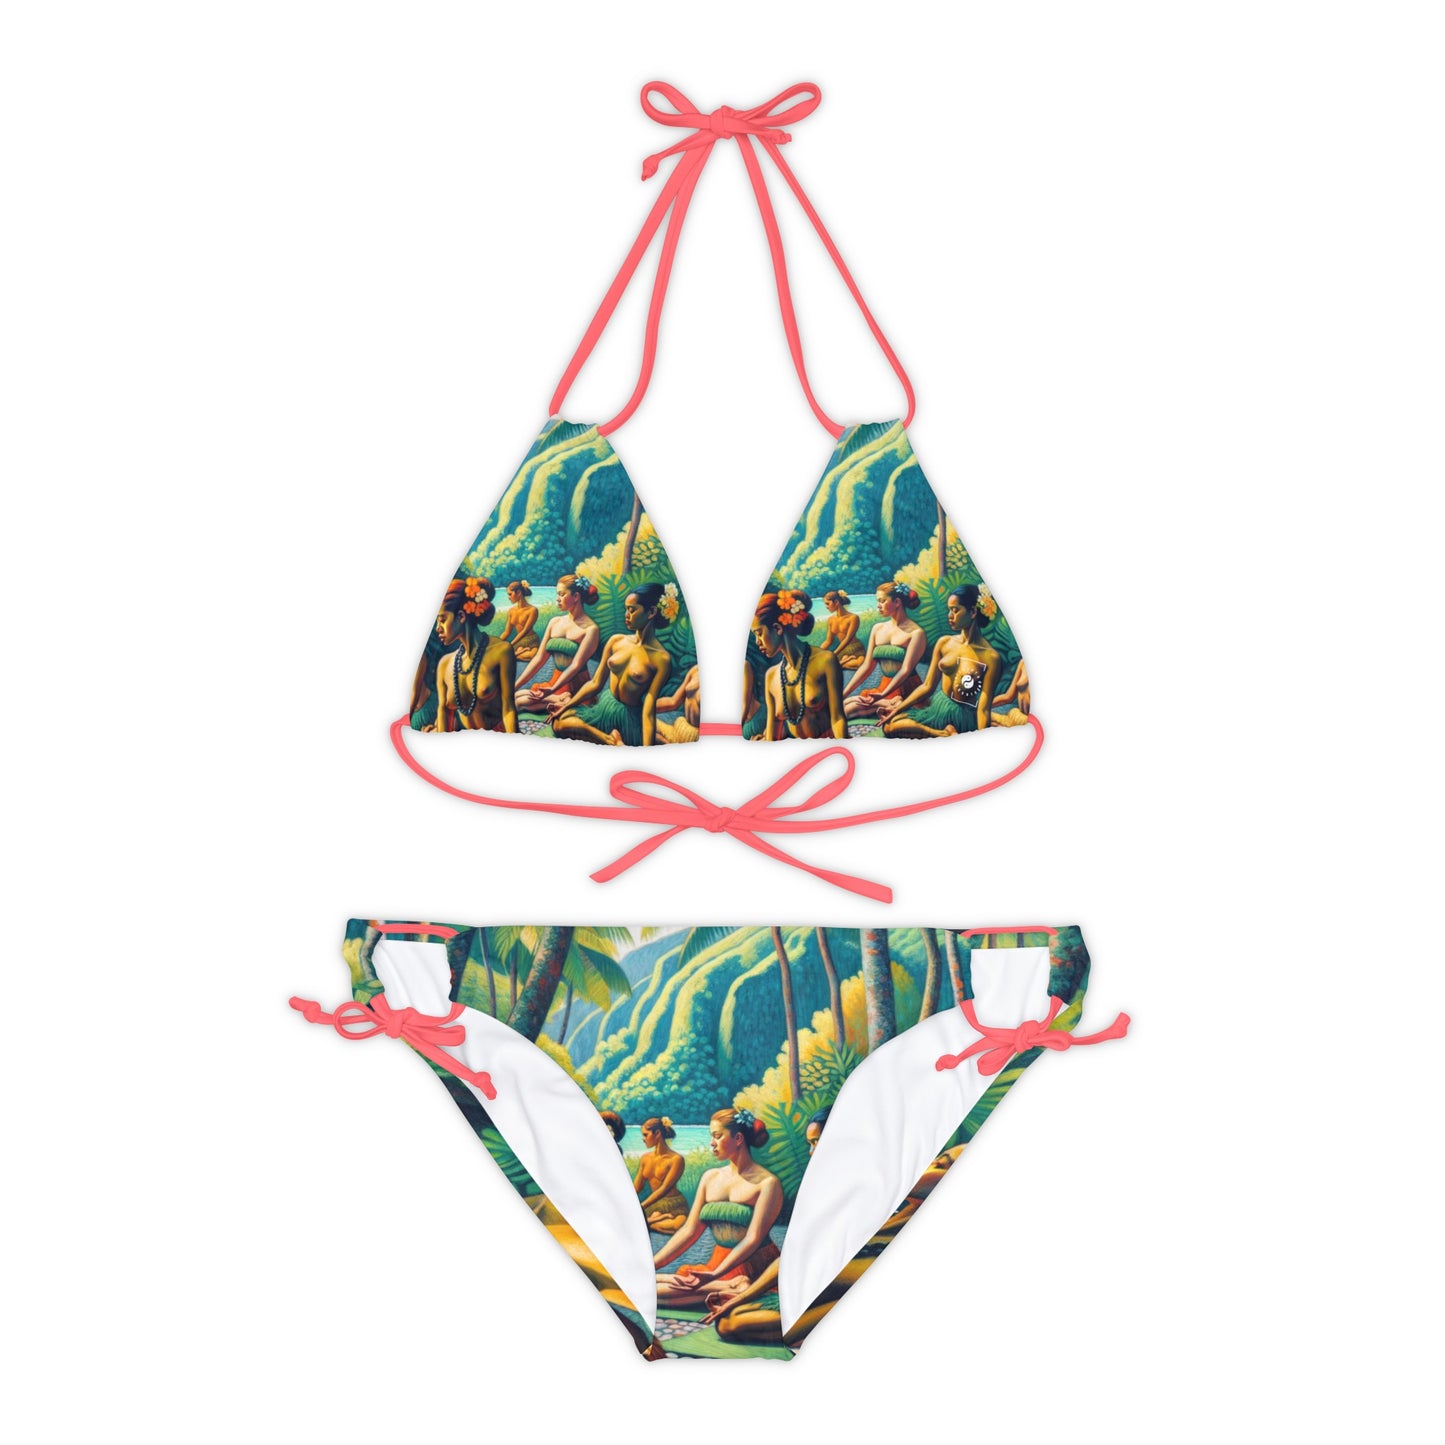 "Tahitian Tranquility - Lace-up Bikini Set